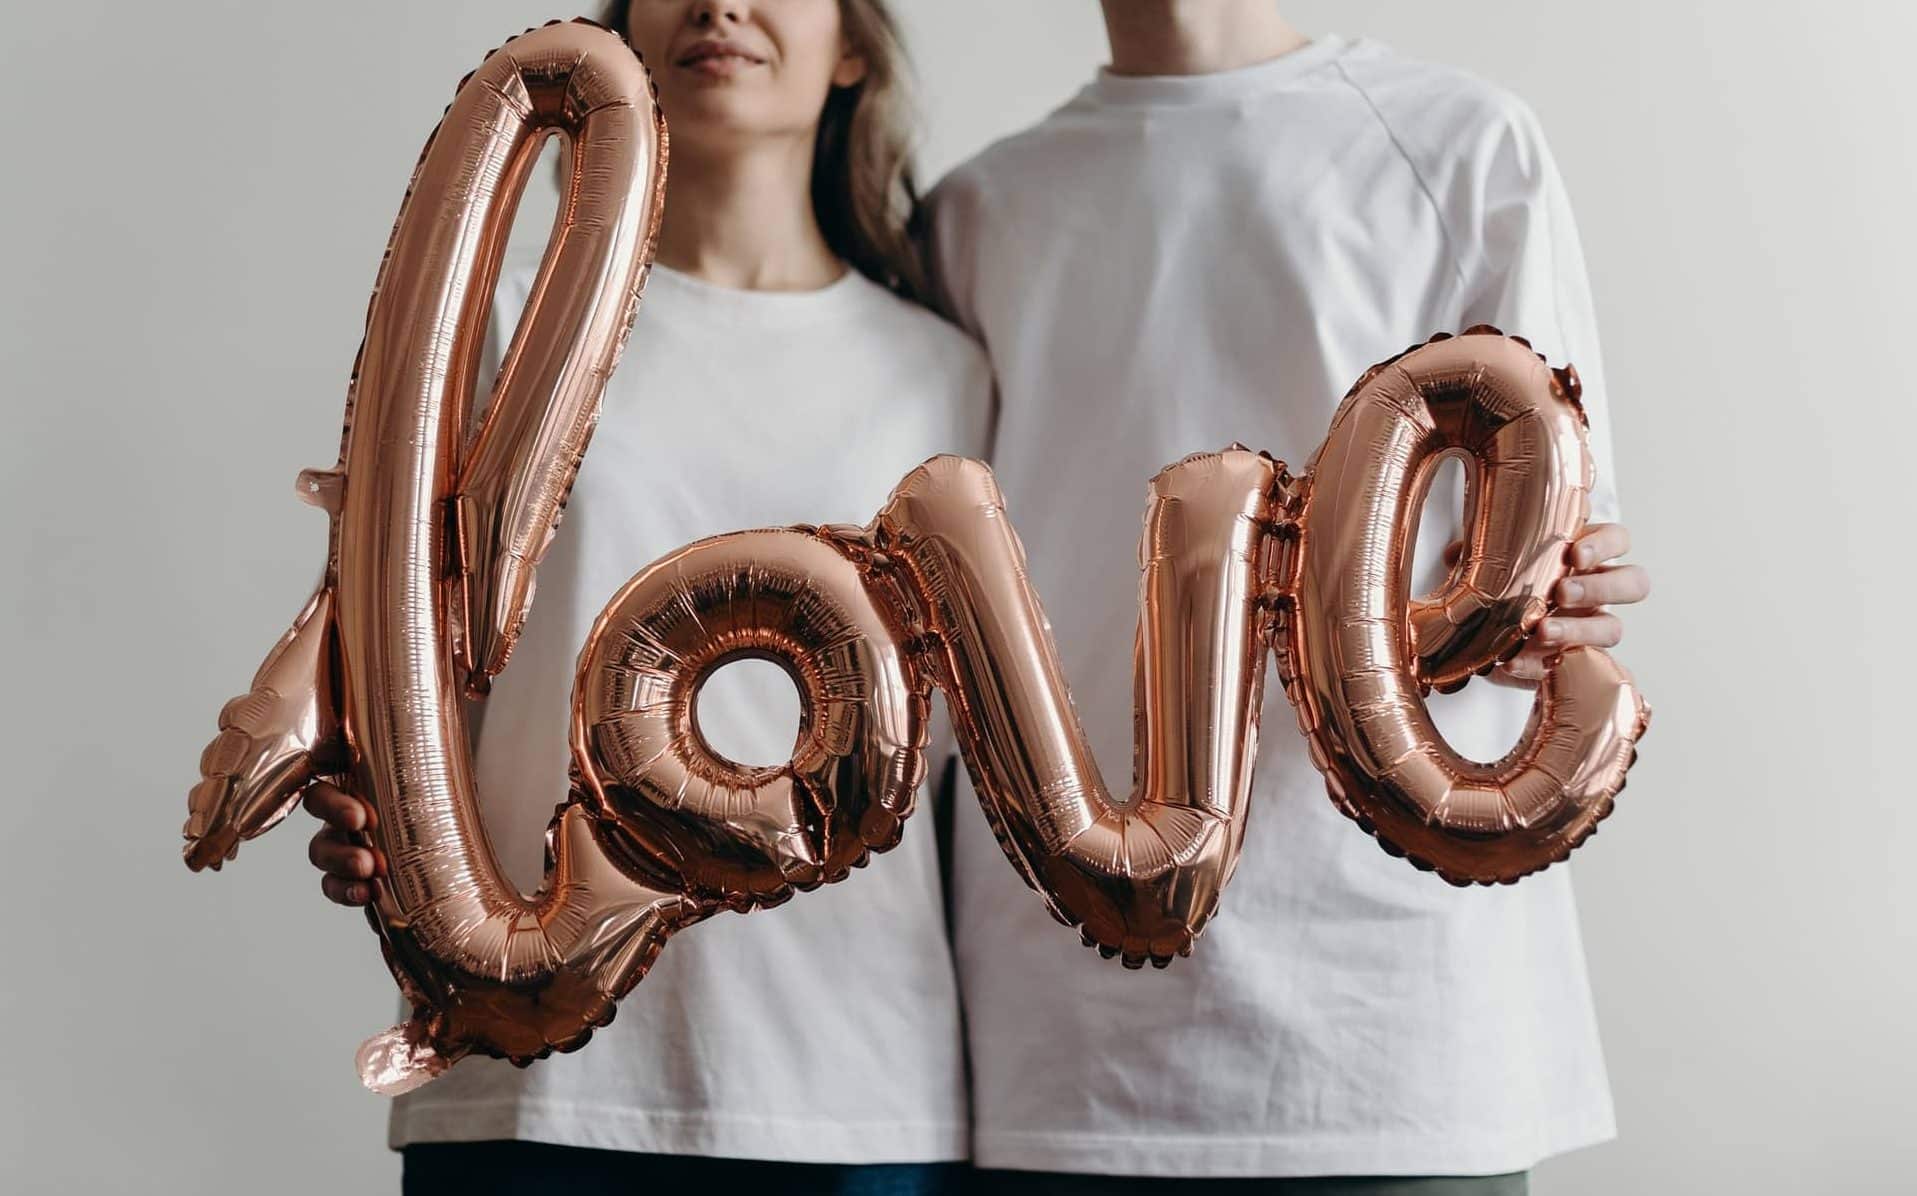 Um homem e uma mulher segurando um balão letrado com a palavra "love".